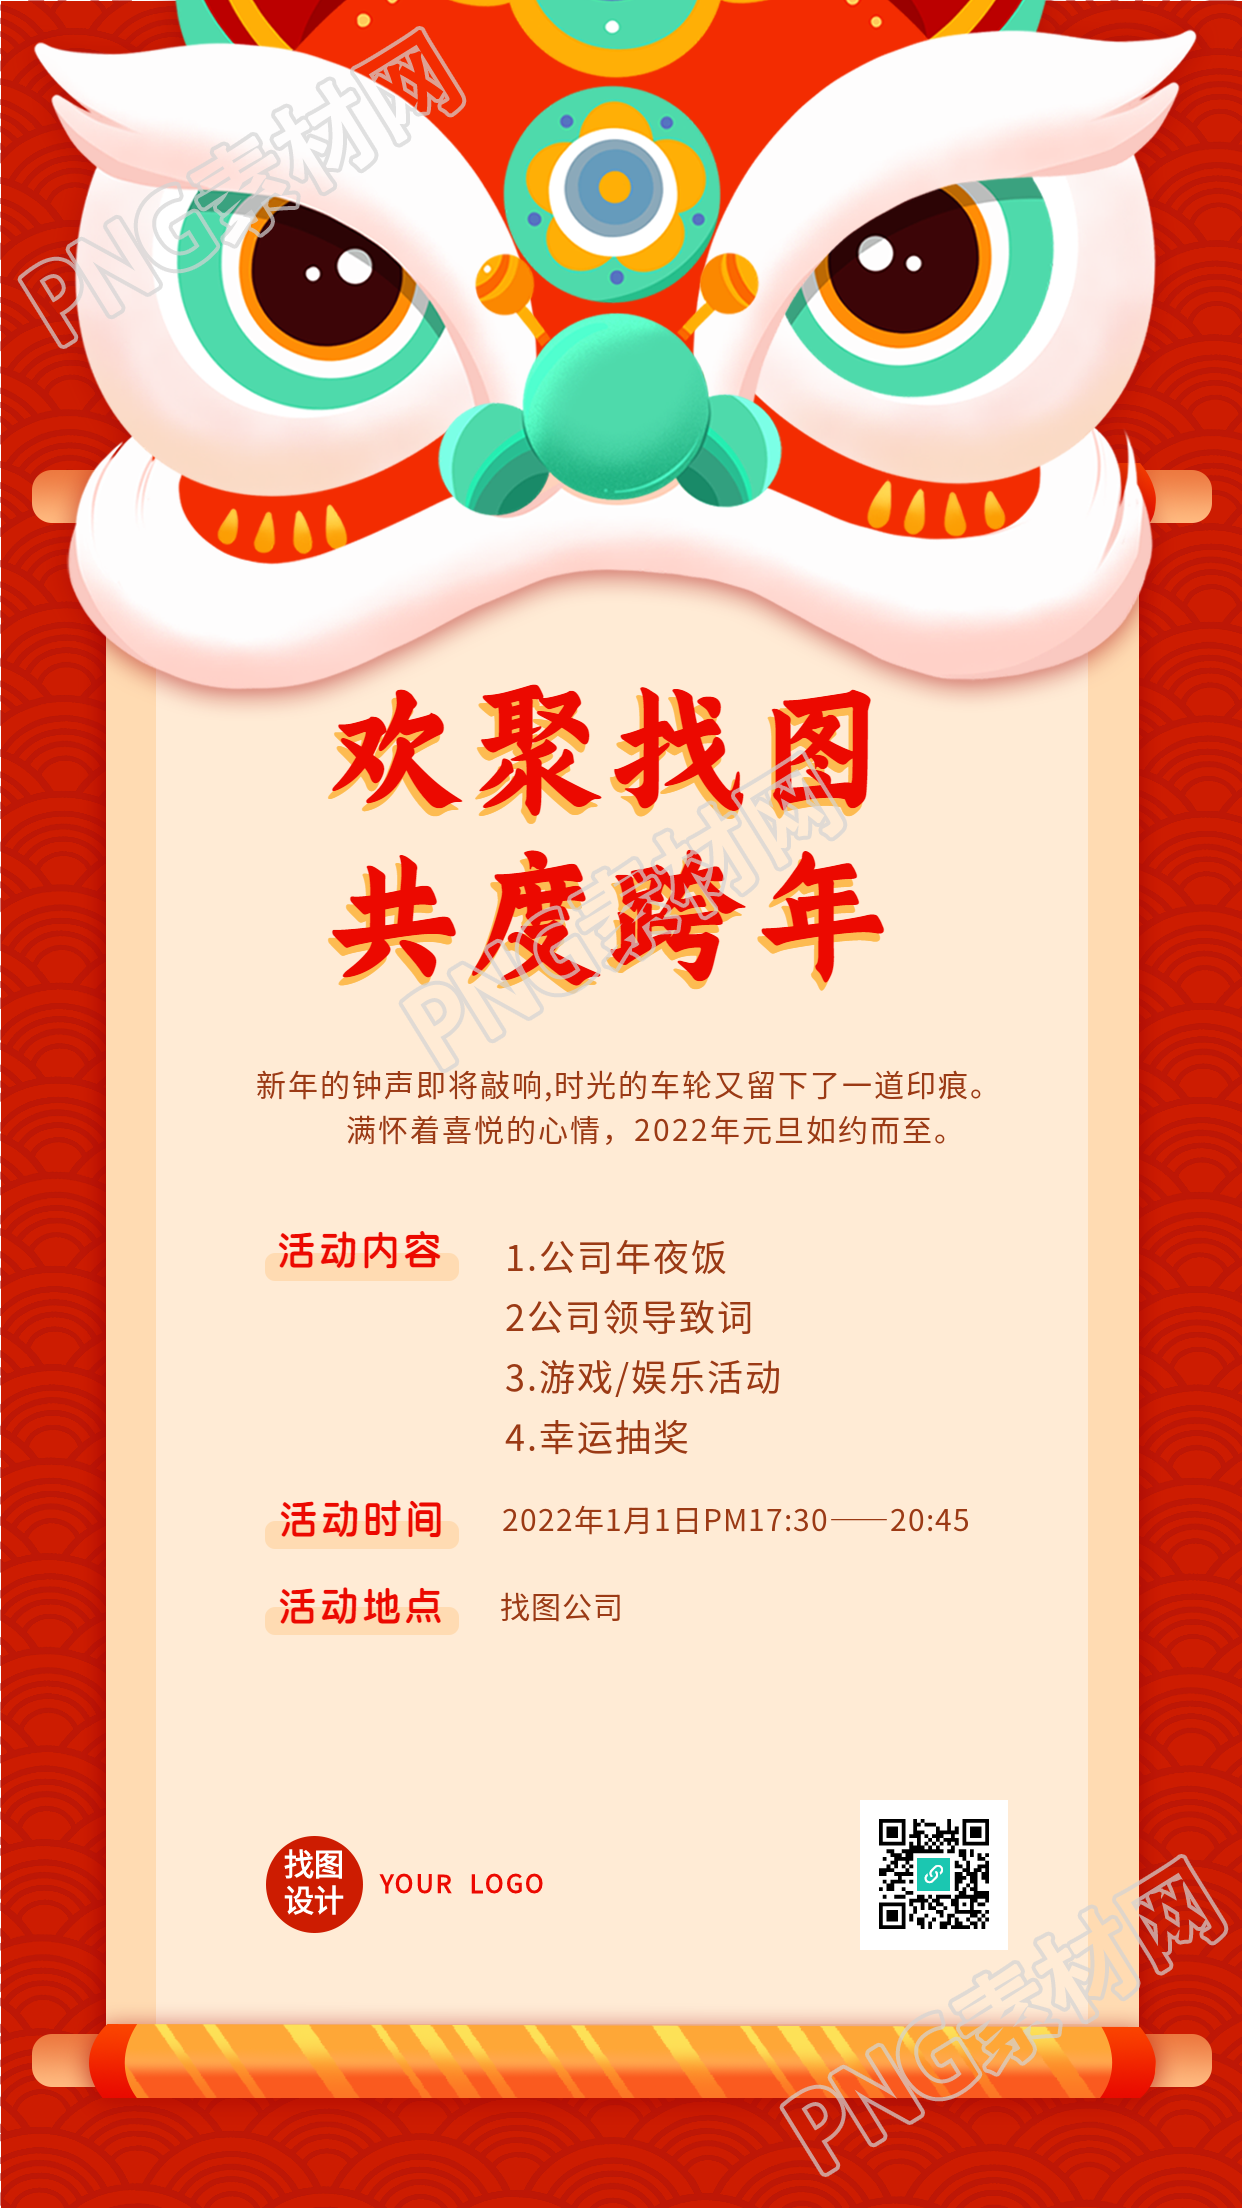 虎年舞狮新春跨年晚会活动手机海报